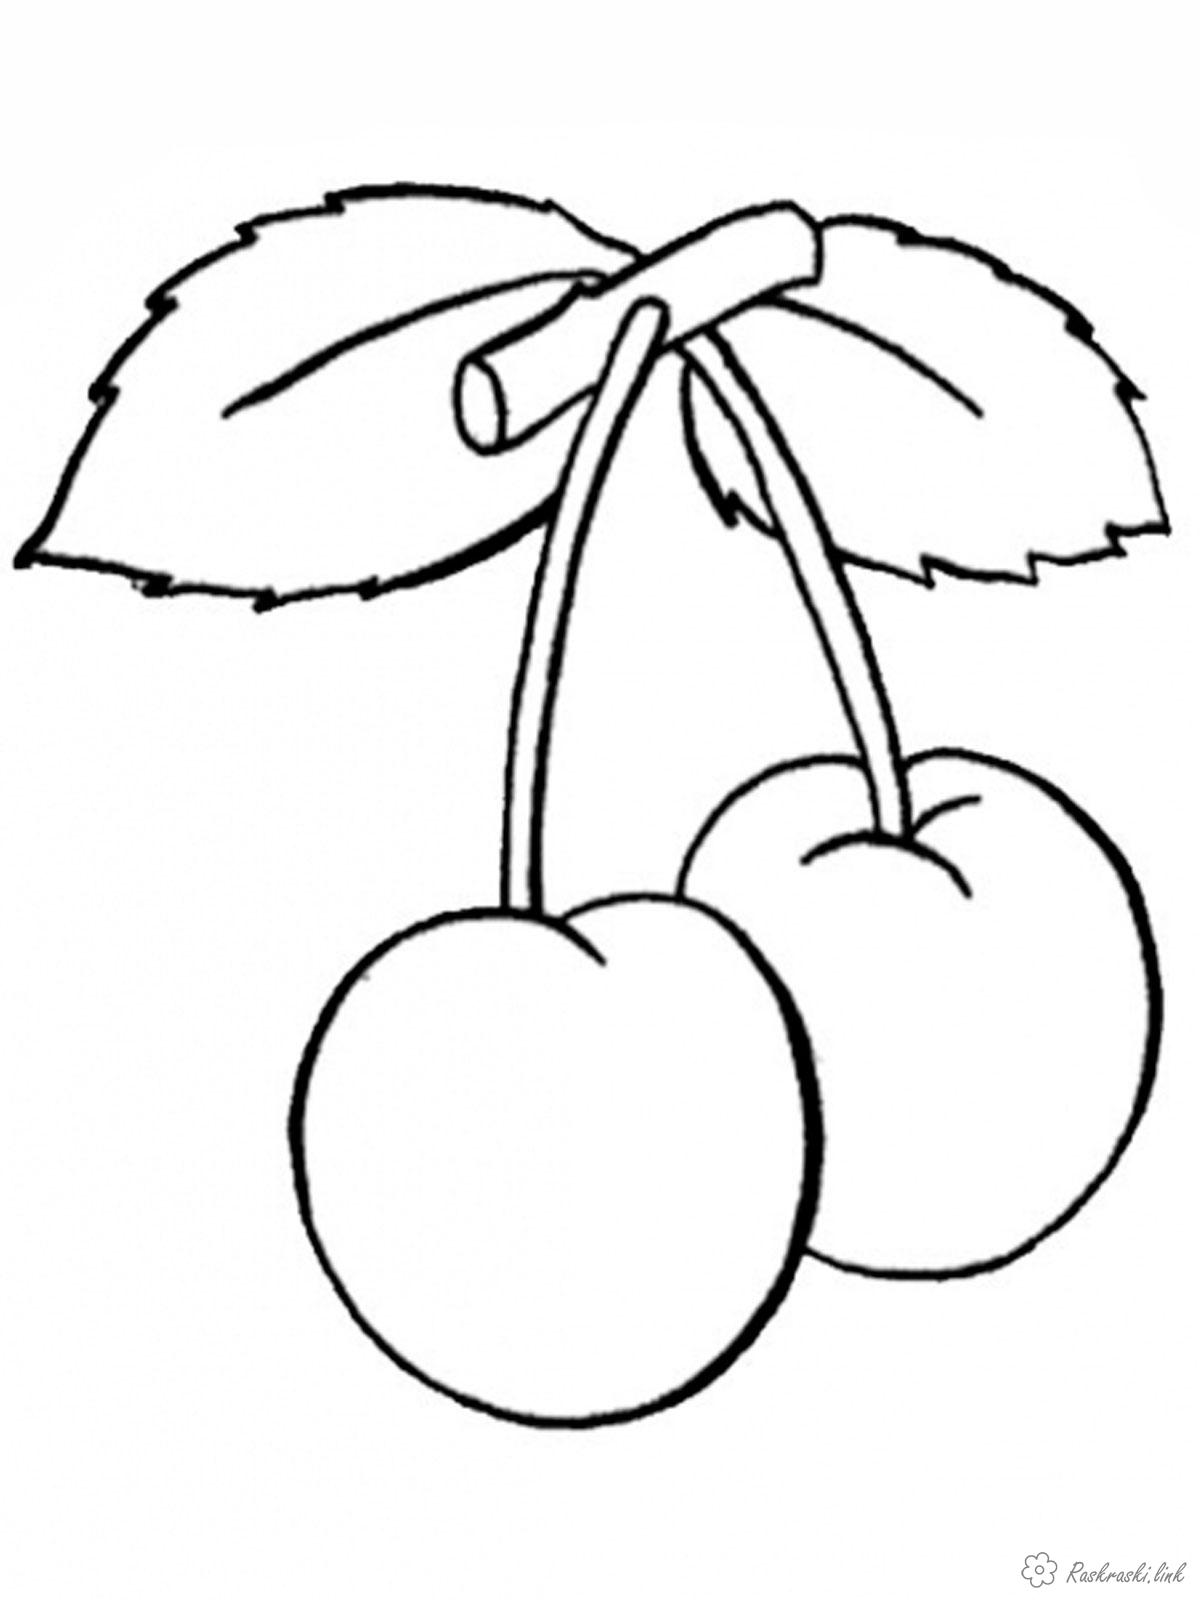 Раскраски Ягоды Две вишни, вкусные, спелые, сочные, раскраска